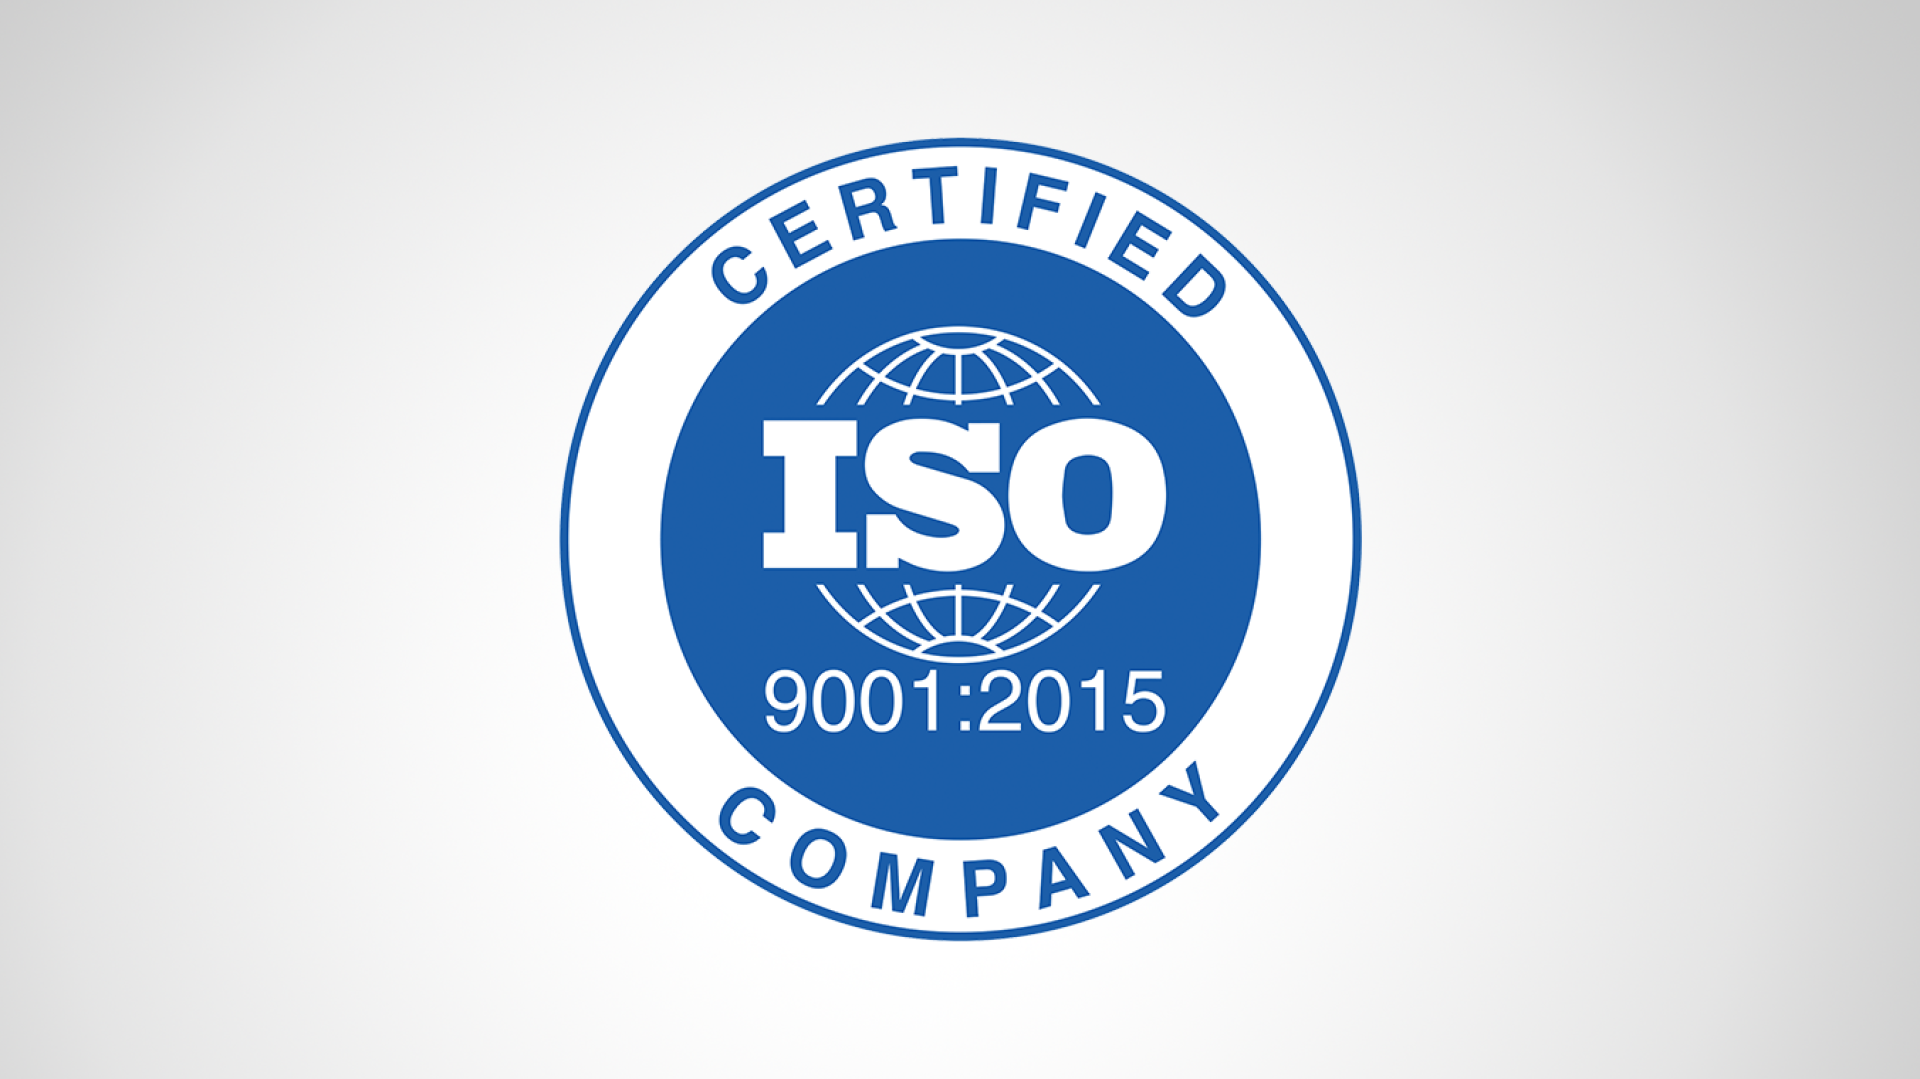 Esito positivo della Dall’Era Valerio nella visita di sorveglianza delle certificazioni di qualità ISO 9001:2015 e ambientale ISO 14001:2015